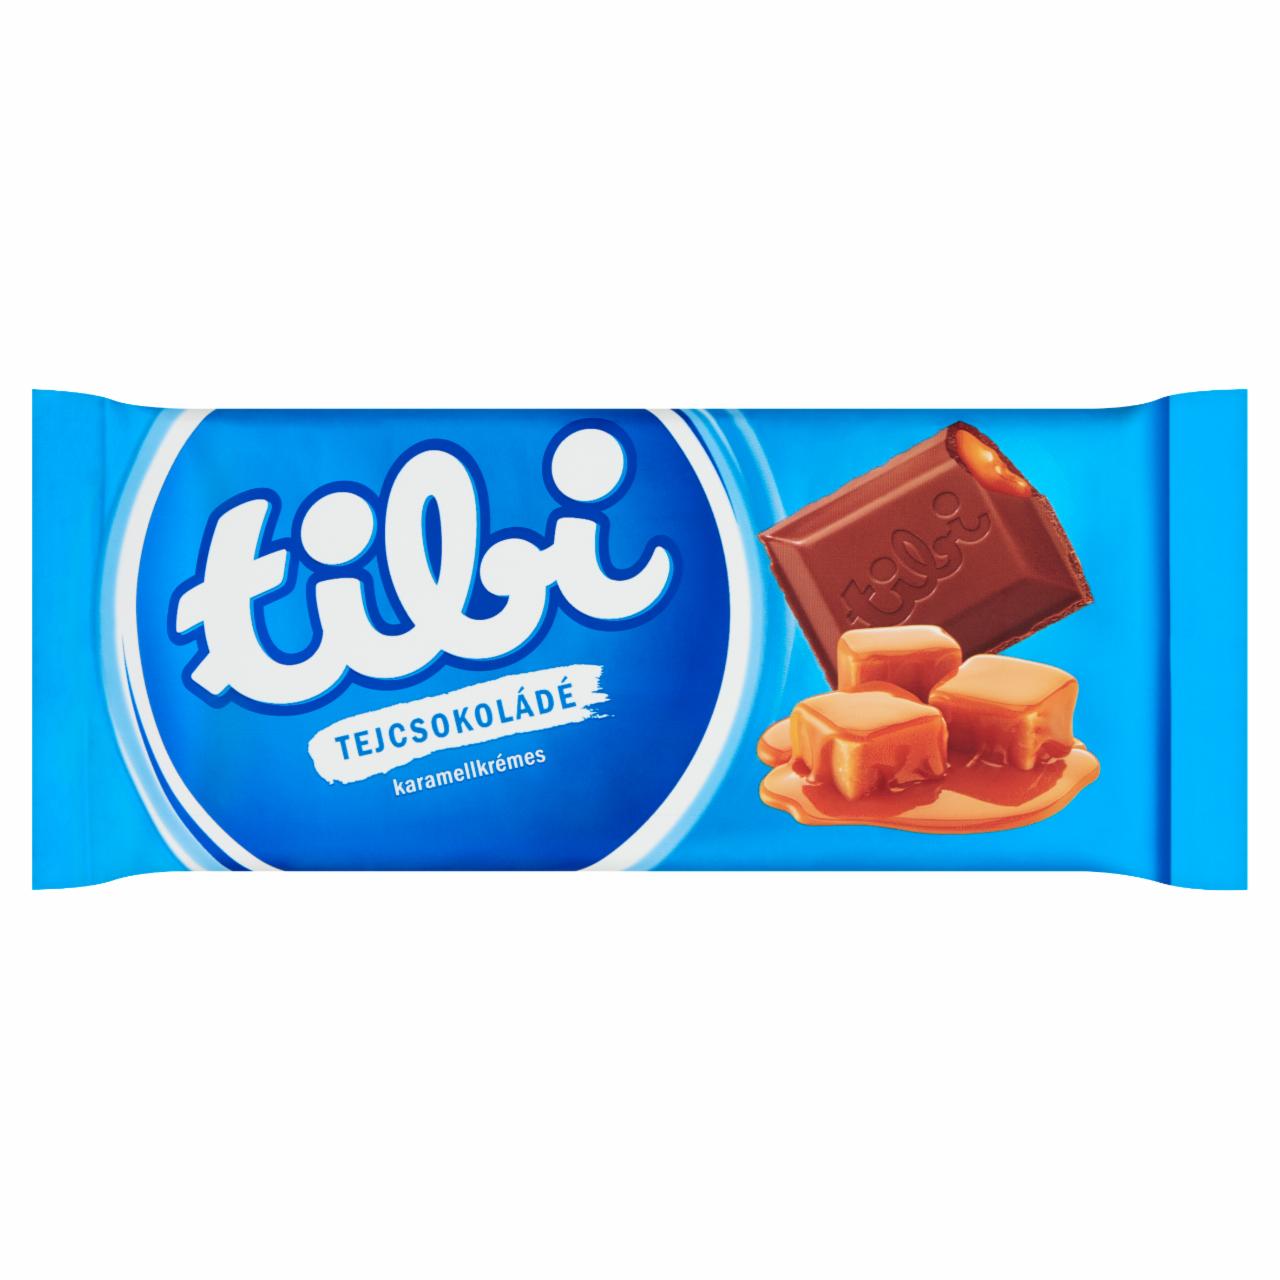 Képek - Tibi karamellkrémes tejcsokoládé 90 g